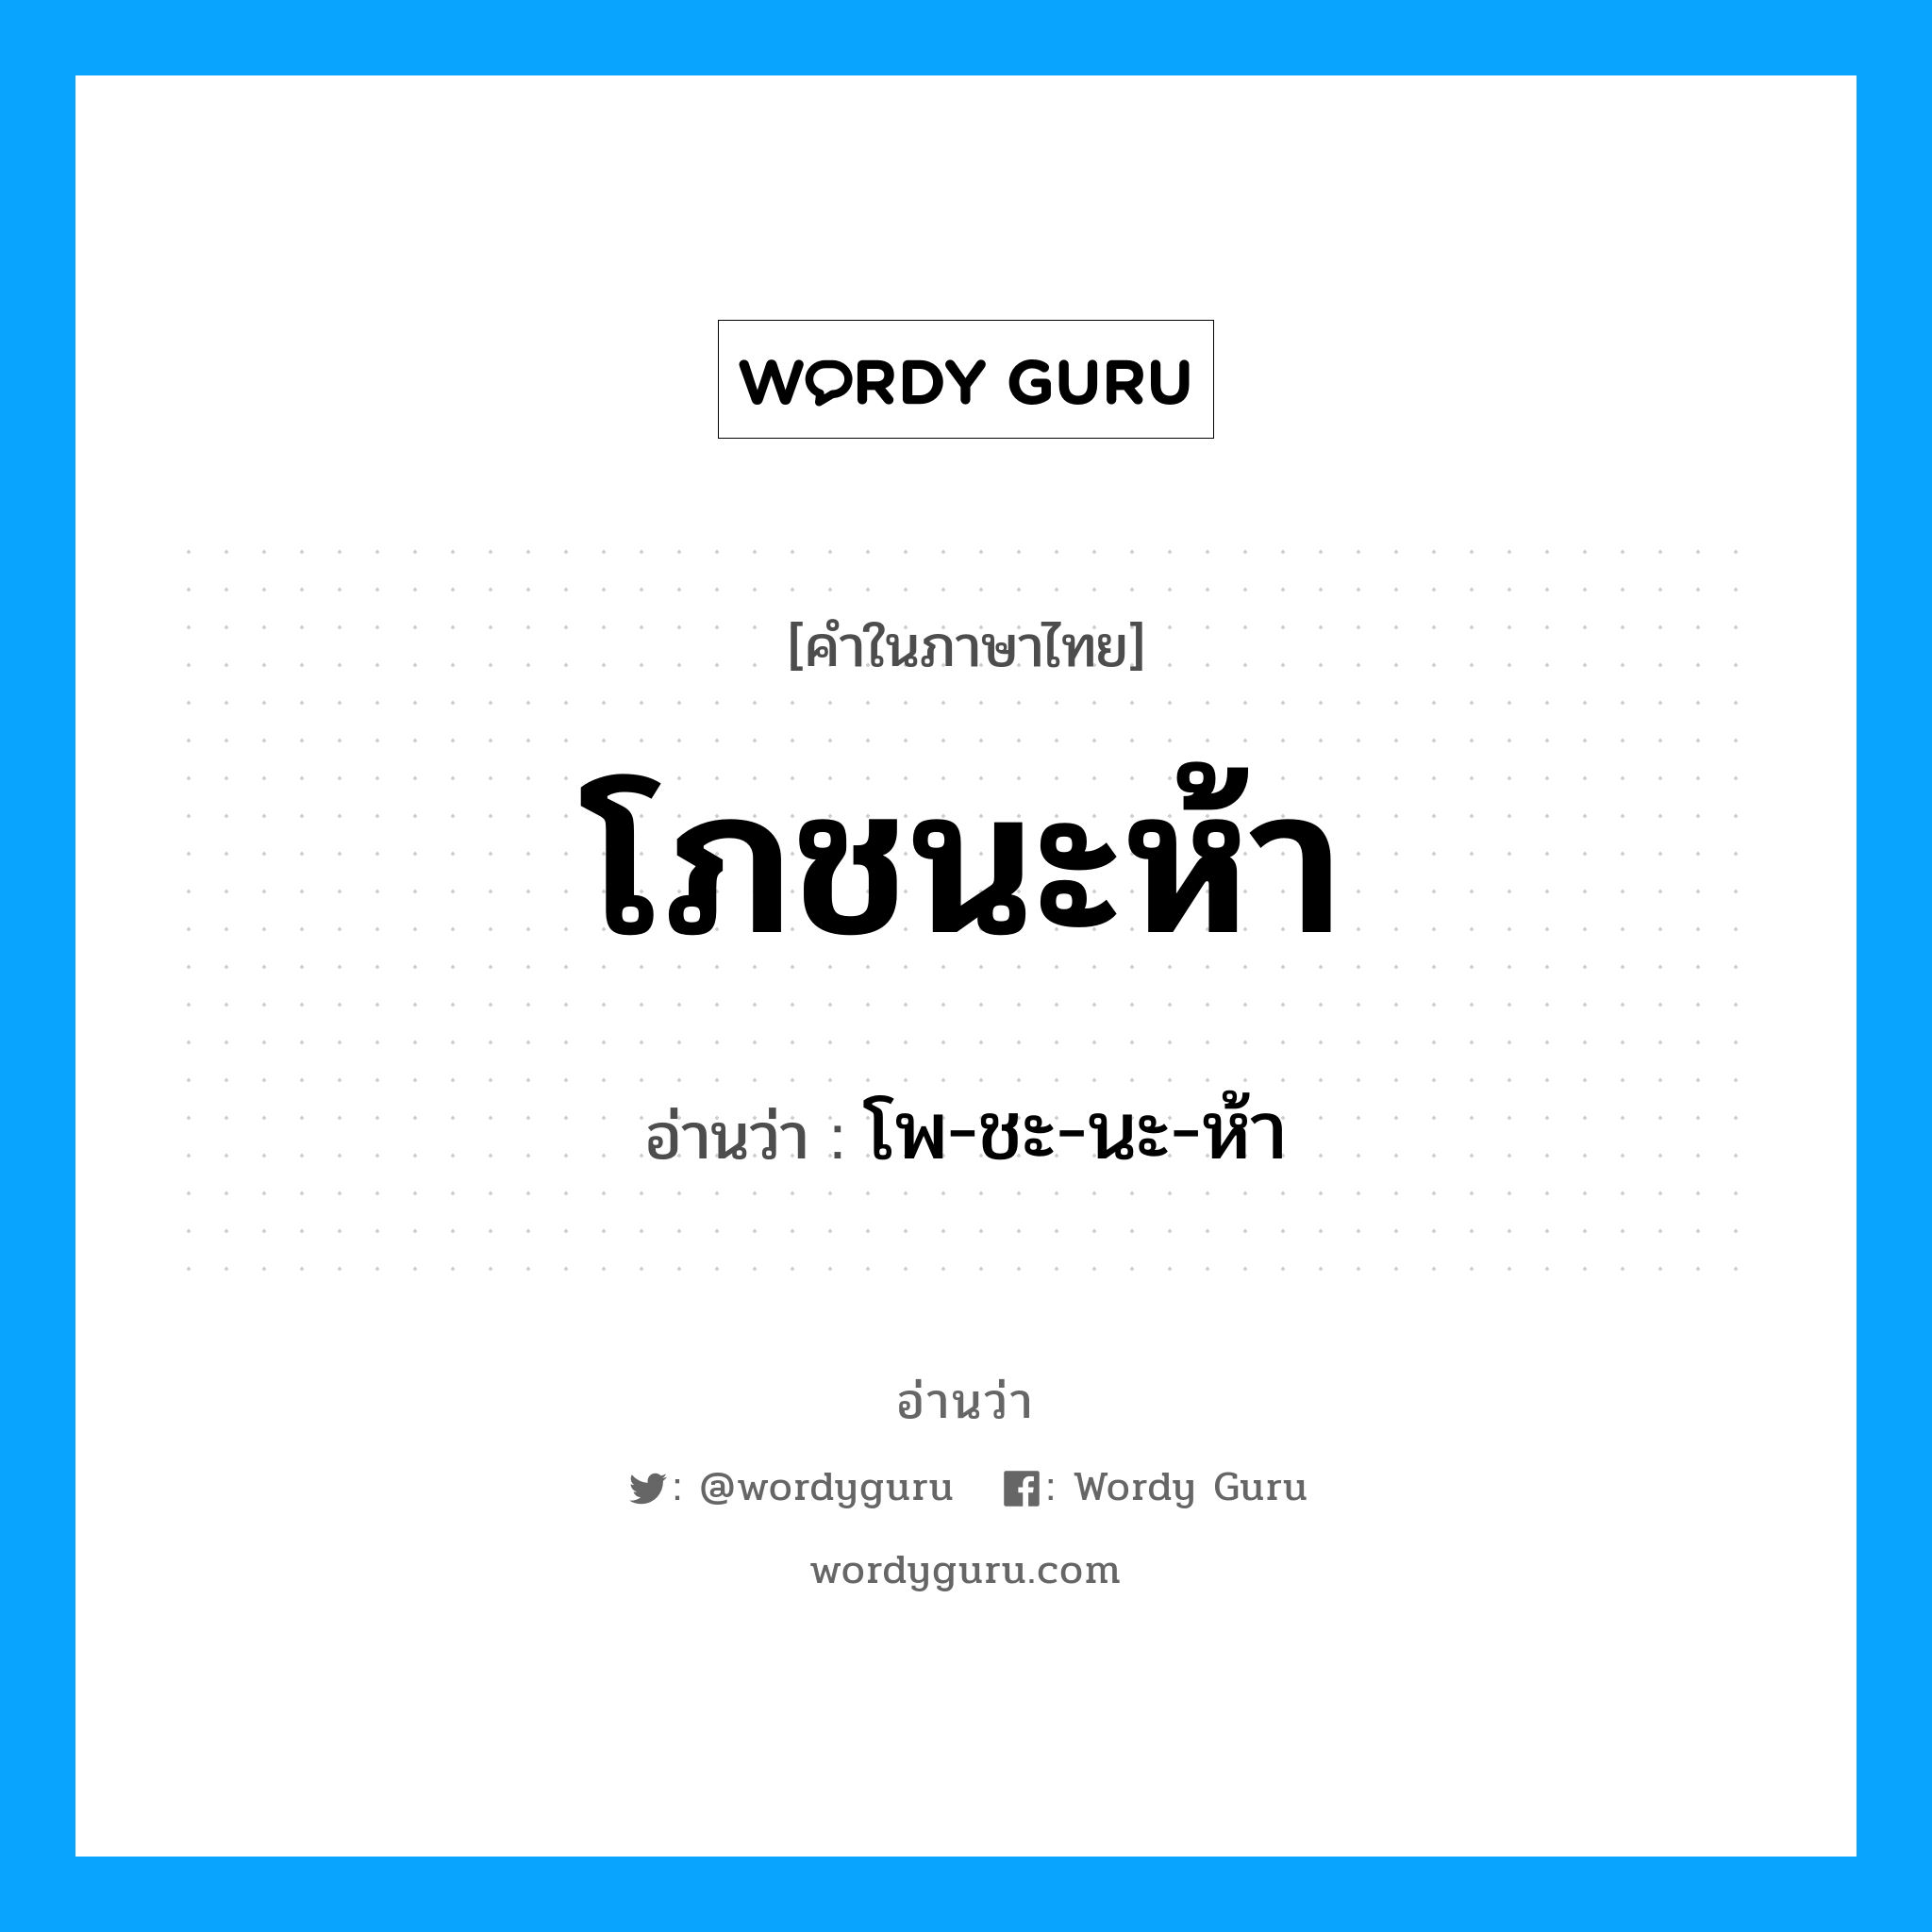 โพ-ชะ-นะ-ห้า เป็นคำอ่านของคำไหน?, คำในภาษาไทย โพ-ชะ-นะ-ห้า อ่านว่า โภชนะห้า